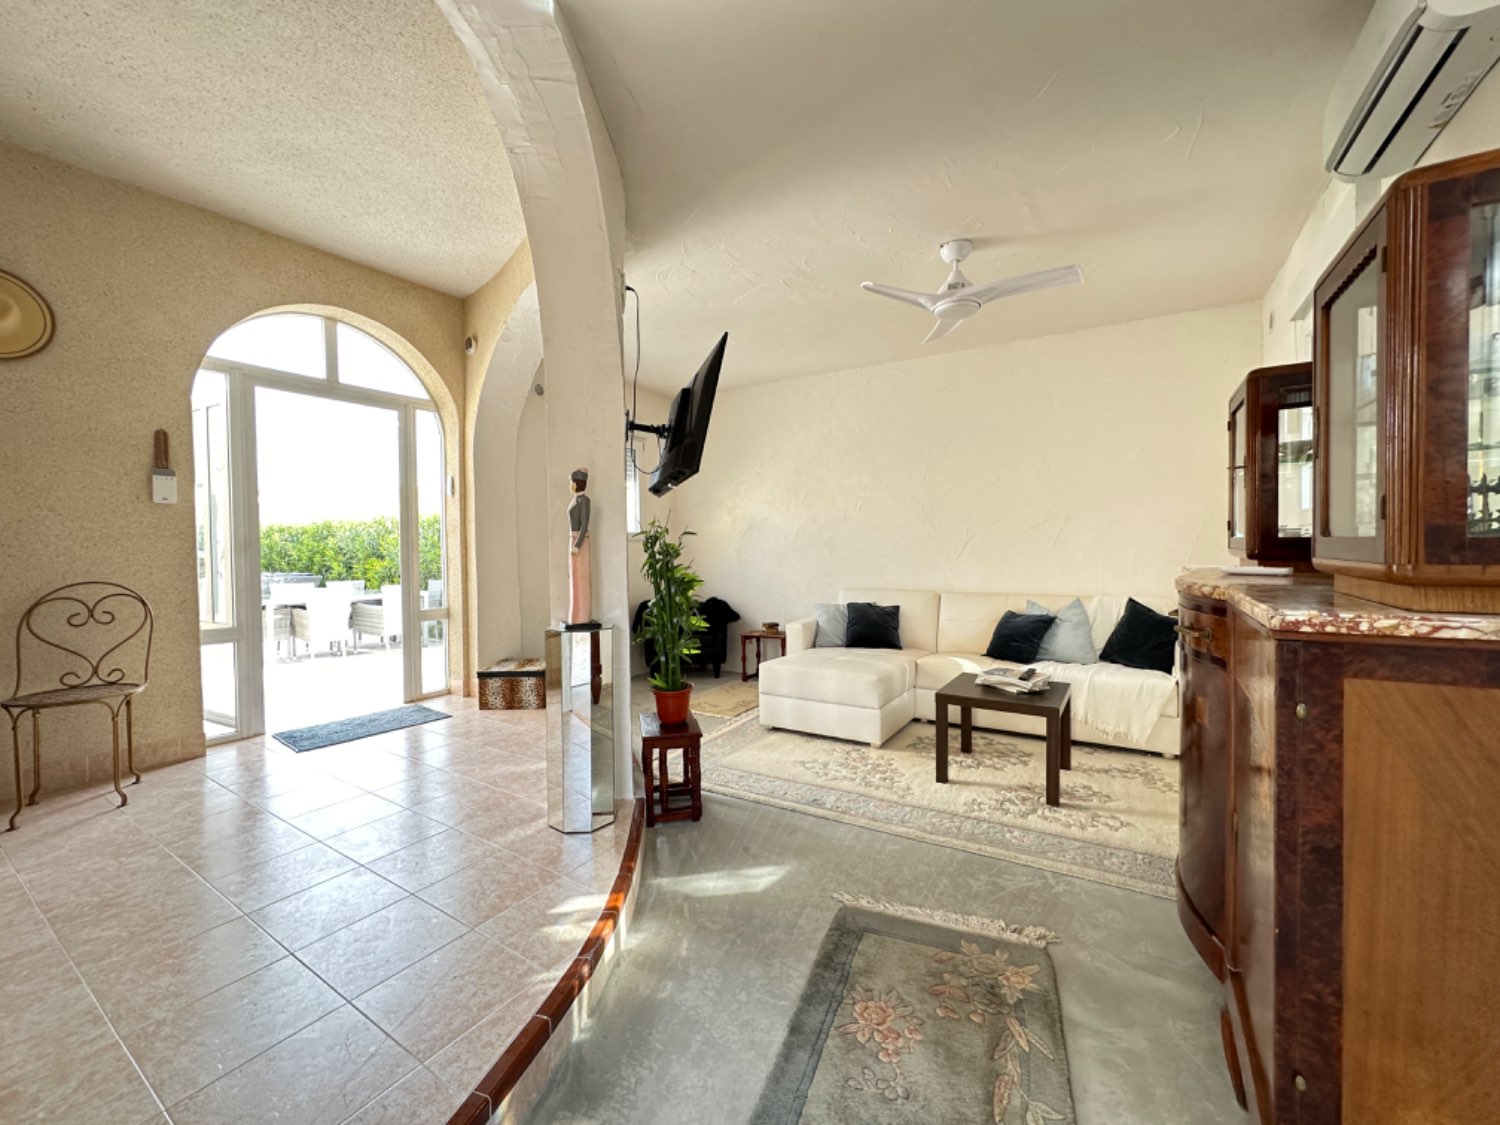 Detached villa with 2 bedrooms located in Florida ( Orihuela coast )